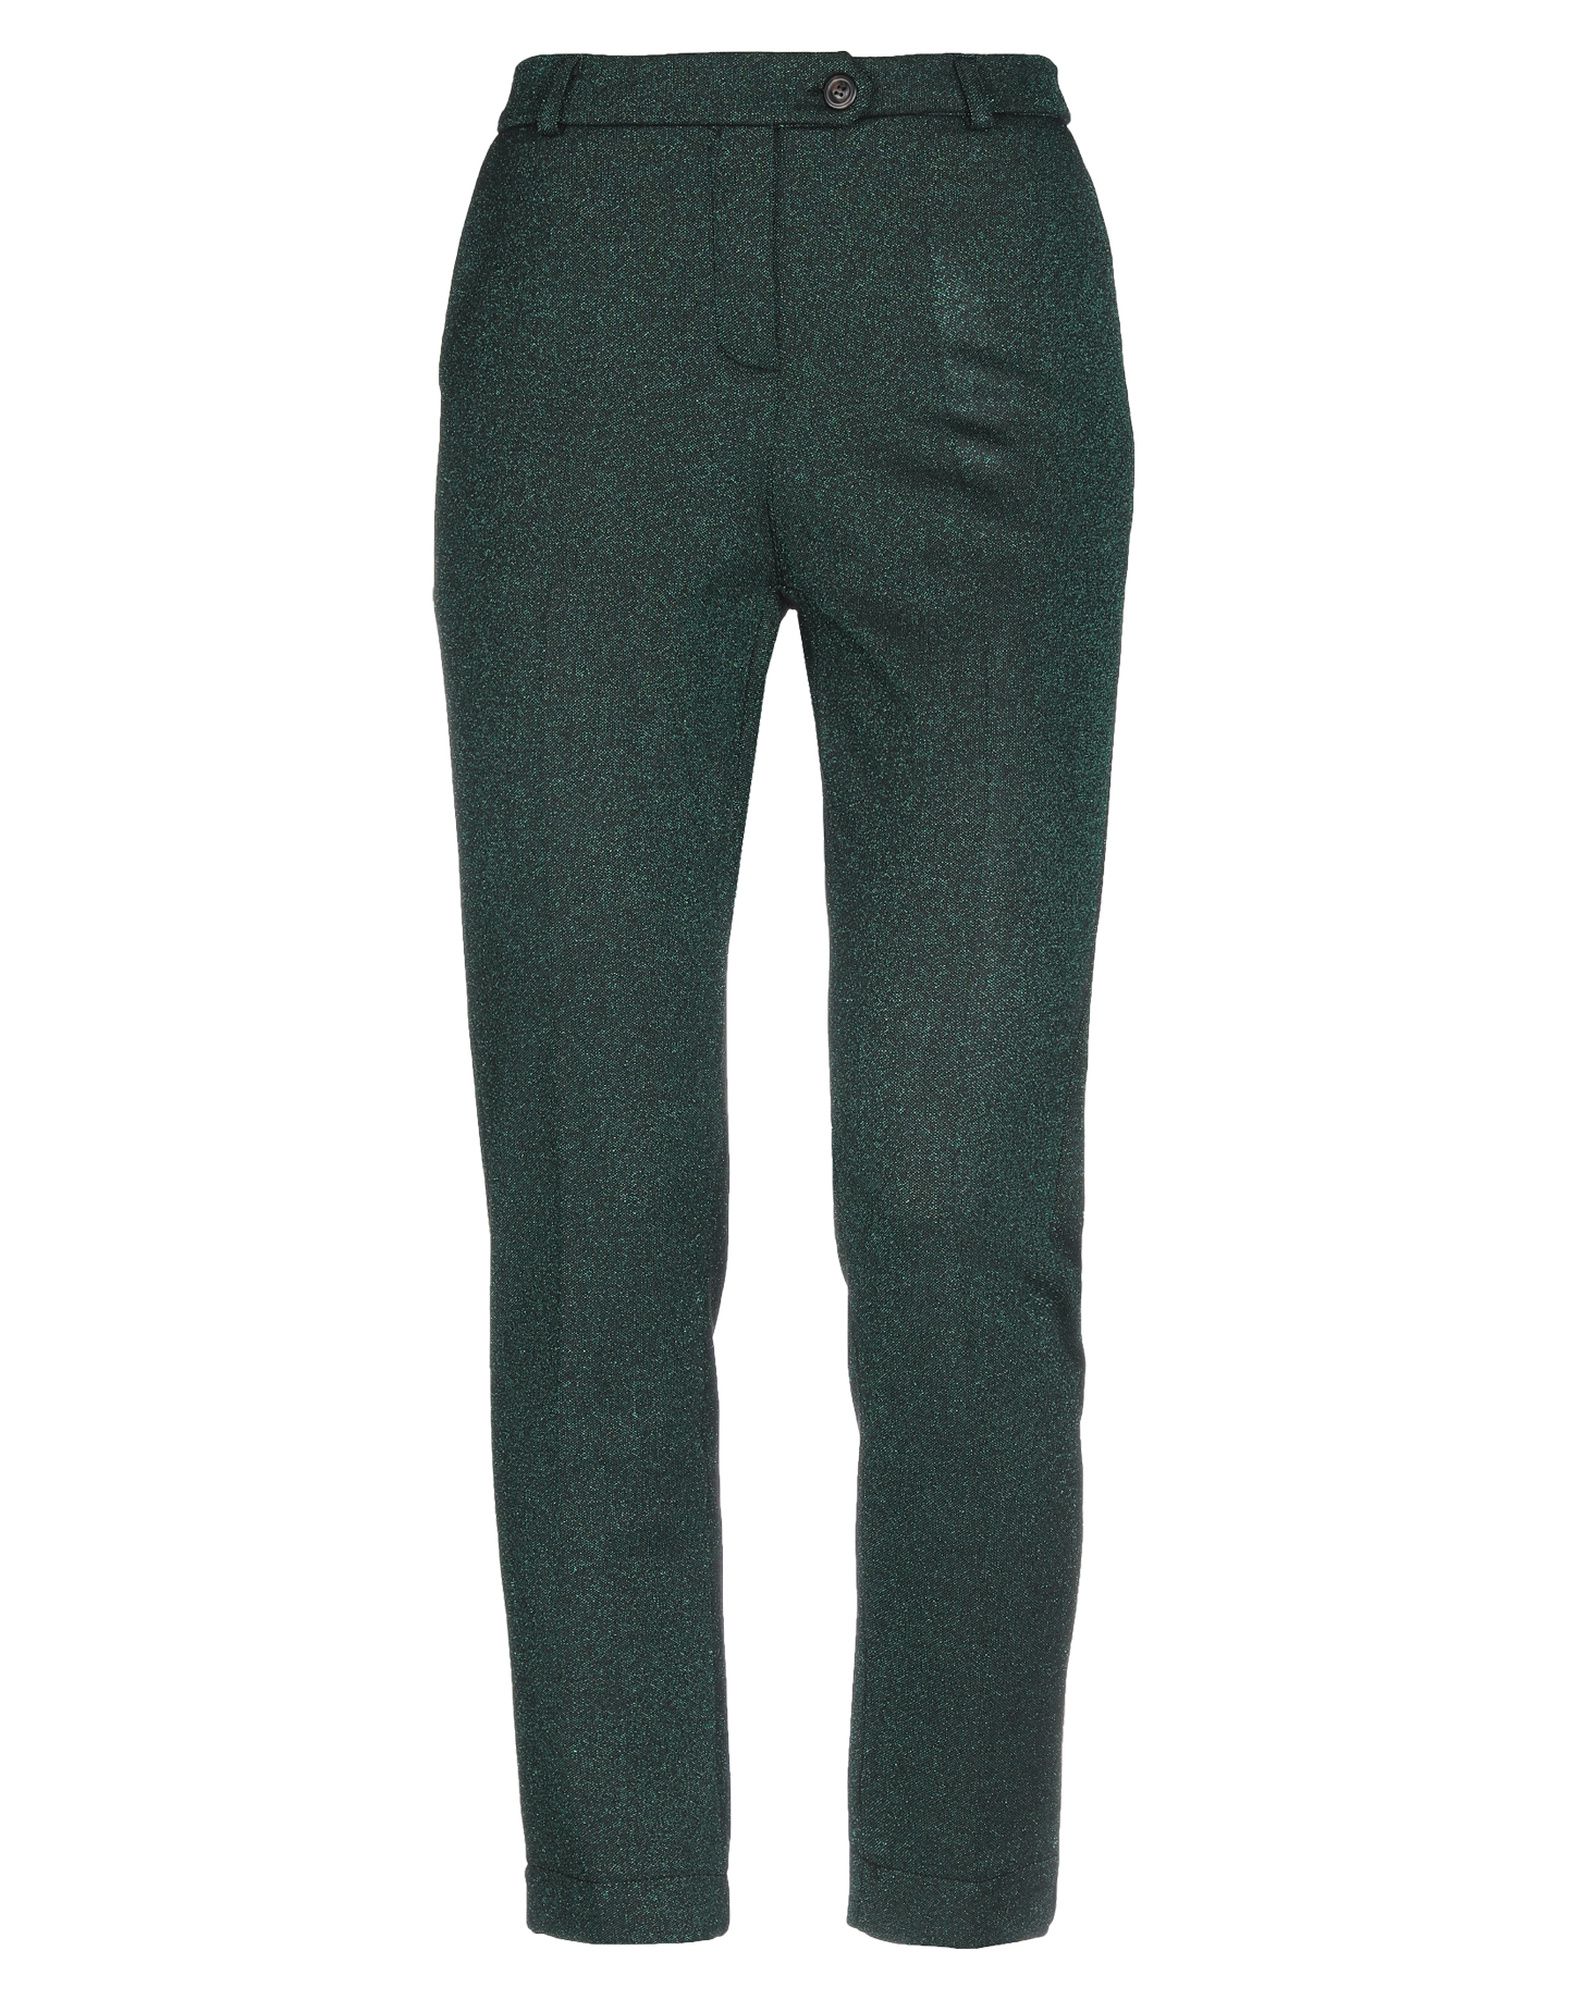 Повседневные брюки  - Зеленый,Коричневый,Черный цвет